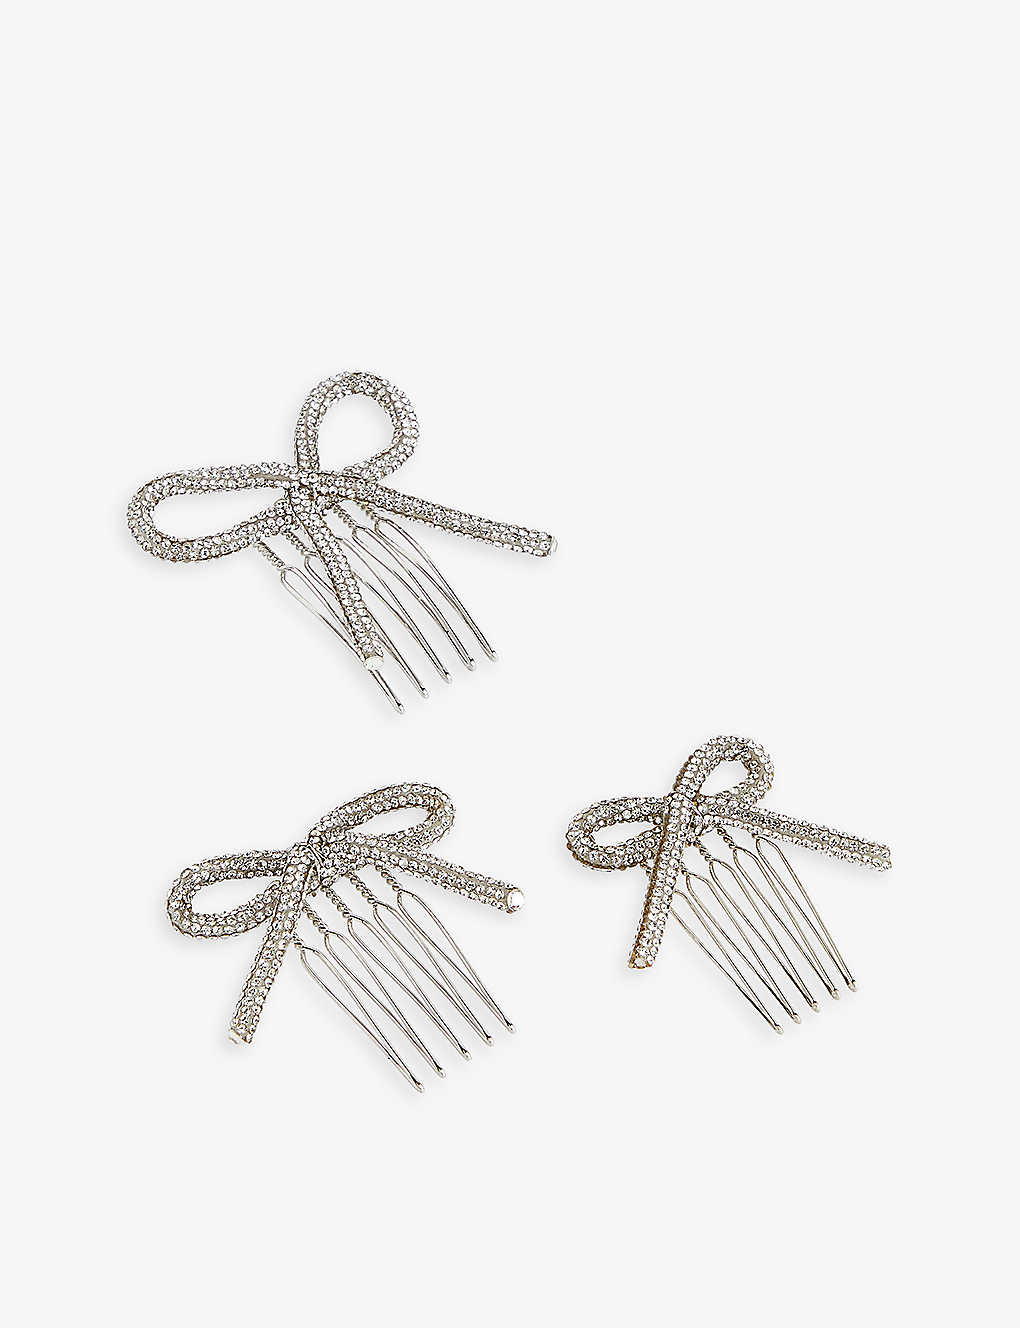 Lelet Ny Womens Silver Sasha Rhinestone-embellished Stainless-steel Comb Set